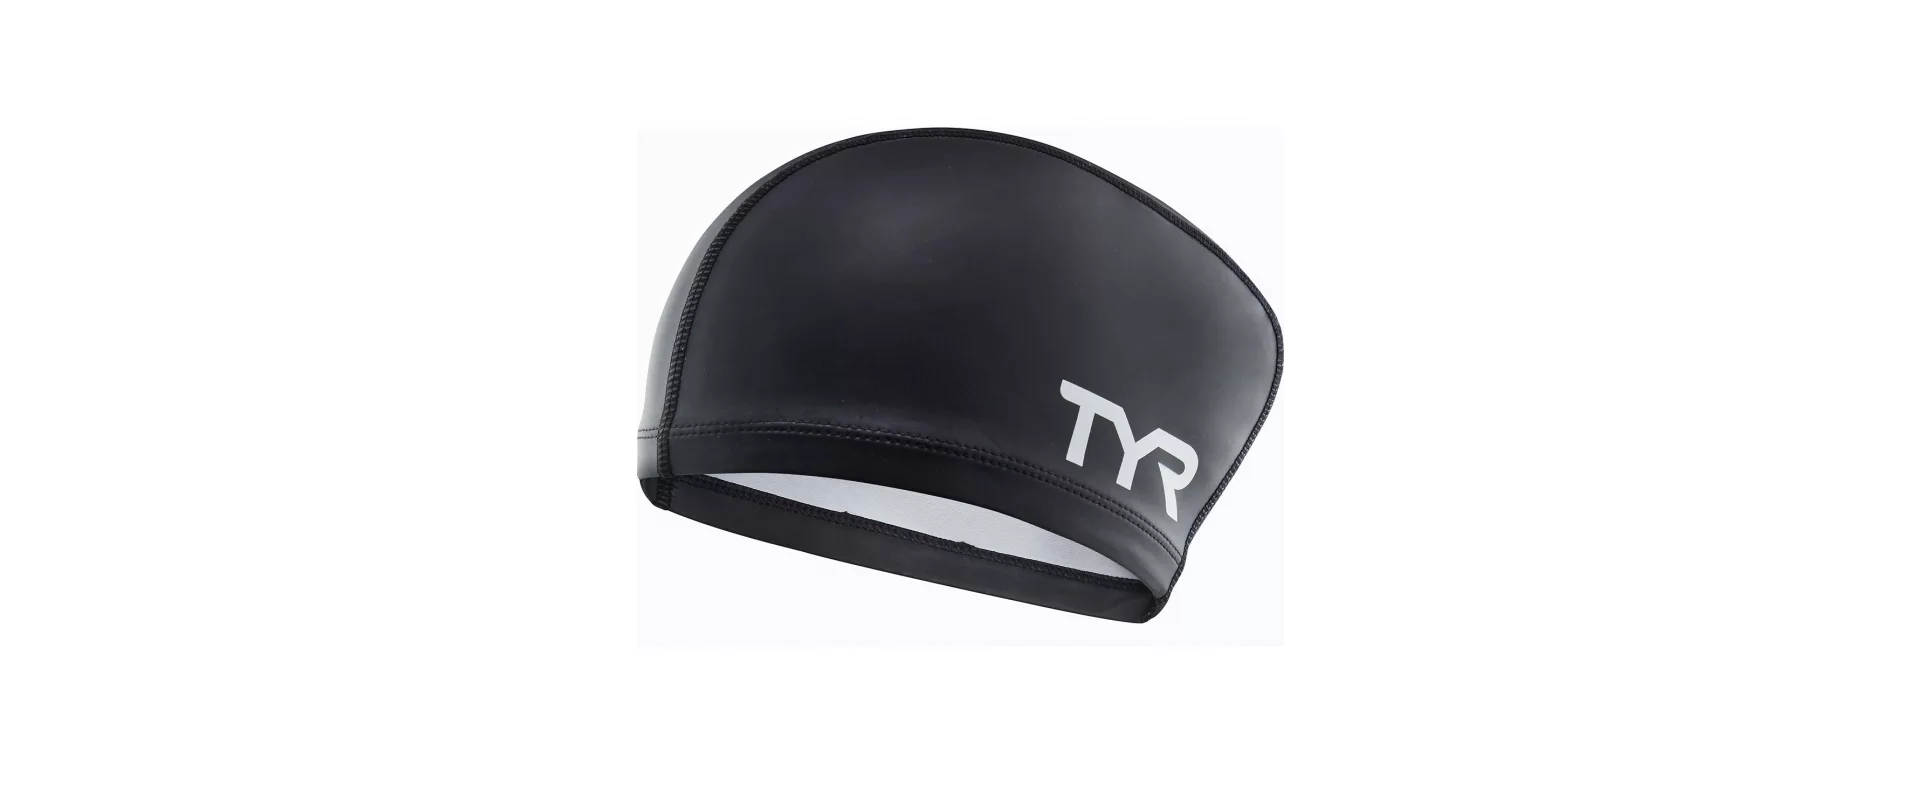 TYR Long Hair Silicone Comfort Swim Cap / Шапочка плавательная для длинных волос